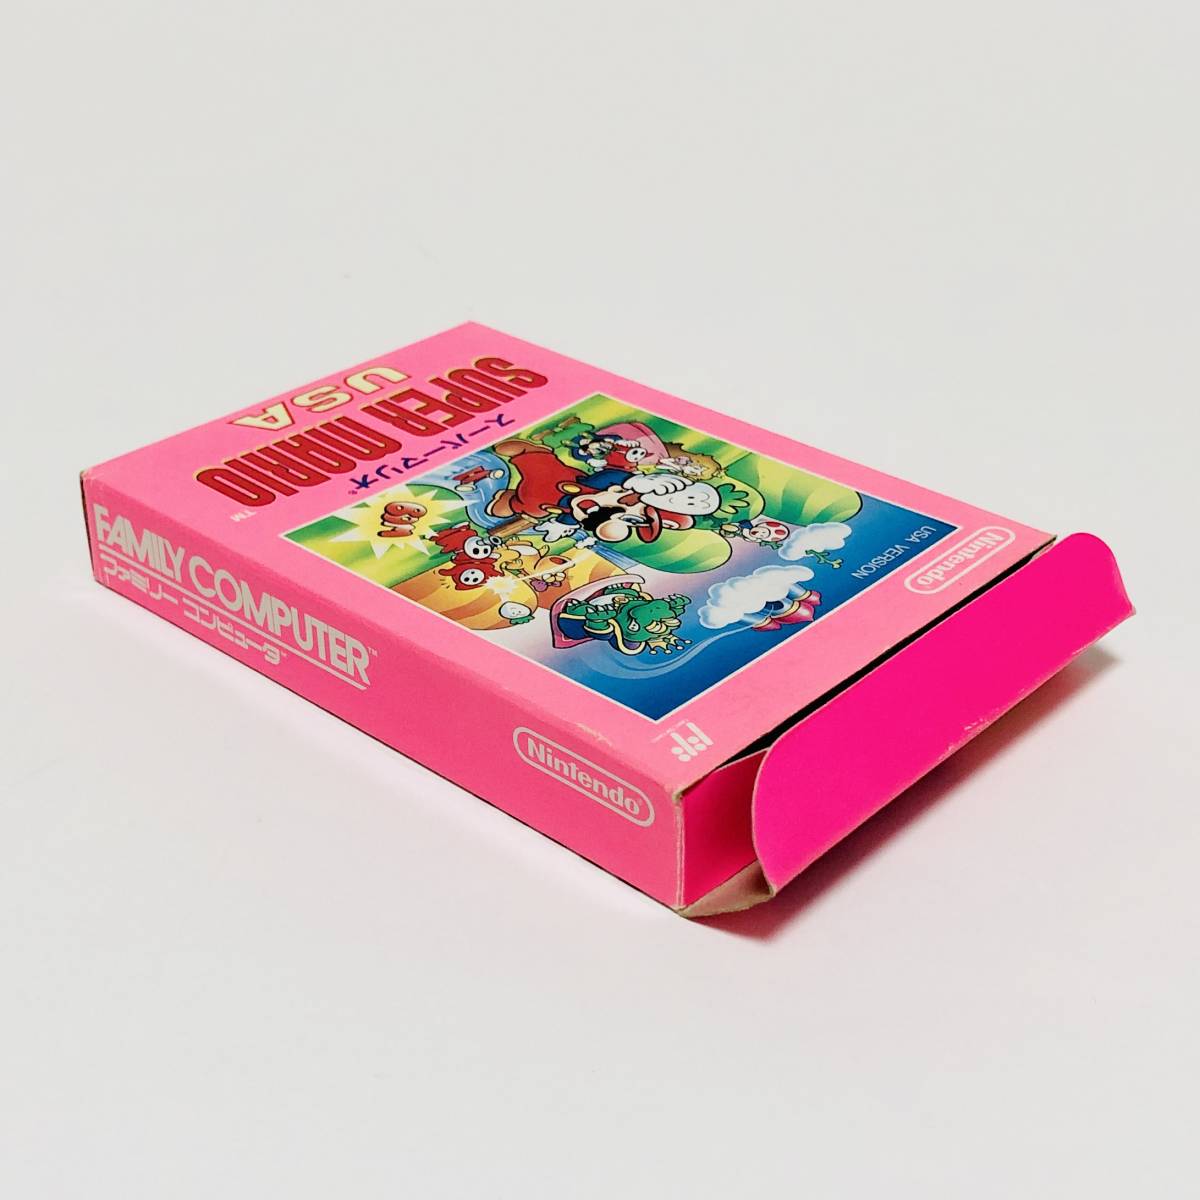 【送料無料】 ファミコン スーパーマリオUSA 箱説付き 任天堂 レトロゲーム Nintendo Famicom Super Mario USA CIB_画像6